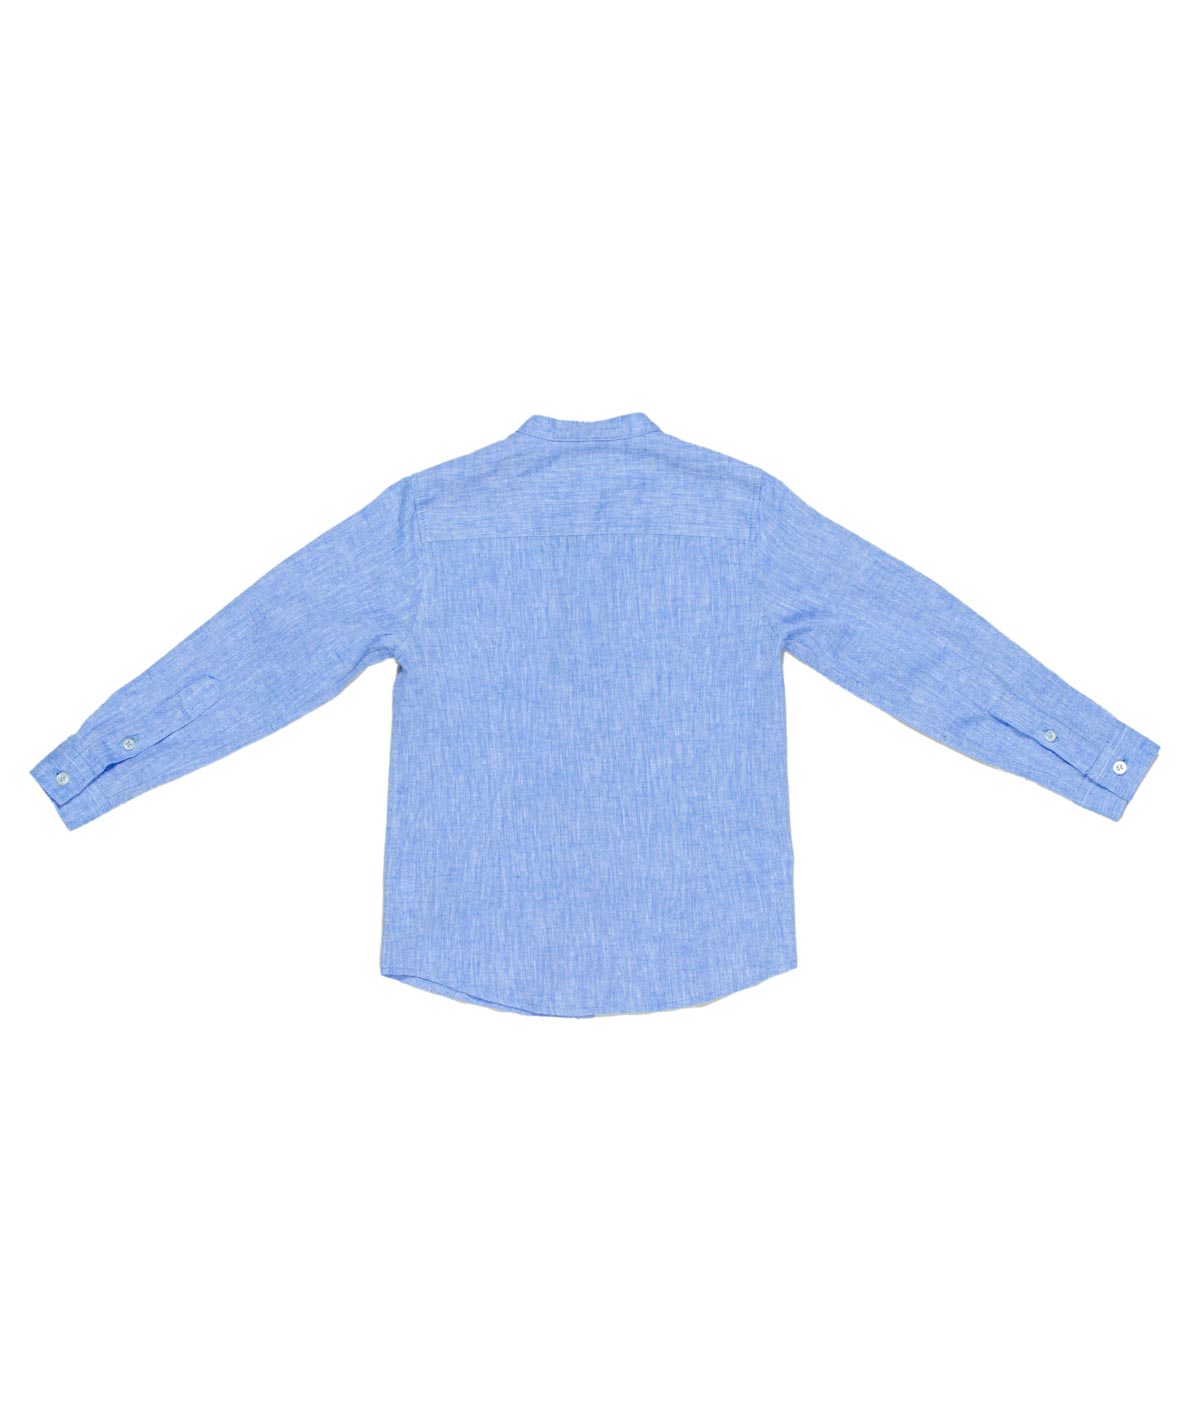 MANUEL RITZ Guru boy shirt in light blue melange linen blend